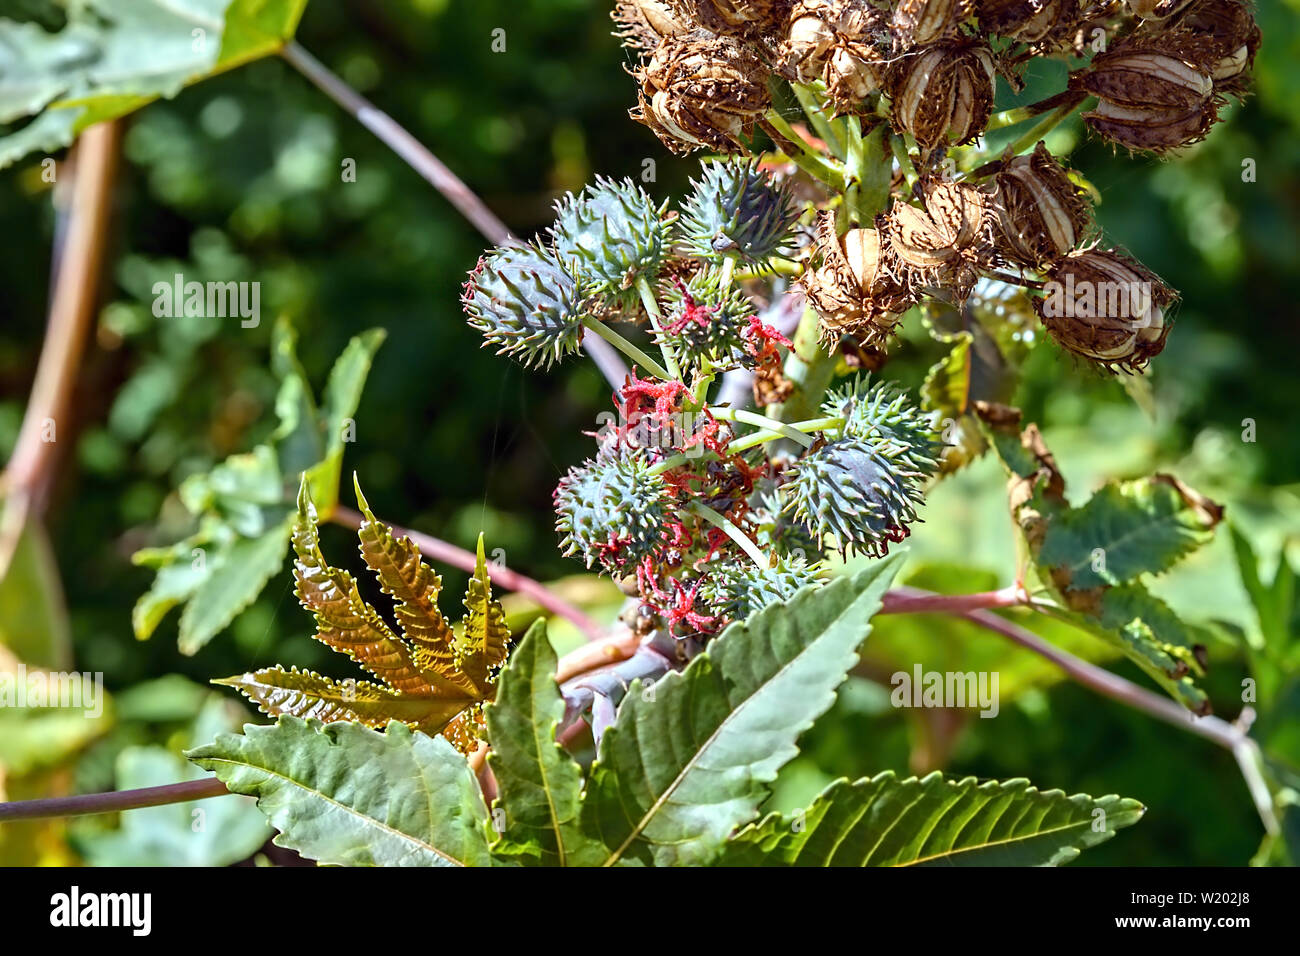 Ein Ricinus communis Pflanze mit grünen Kapsel, frische Blumen und Burst seed pod als auch die Blätter. Einer hochgiftigen Pest, auch Wunderbaum genannt. Stockfoto